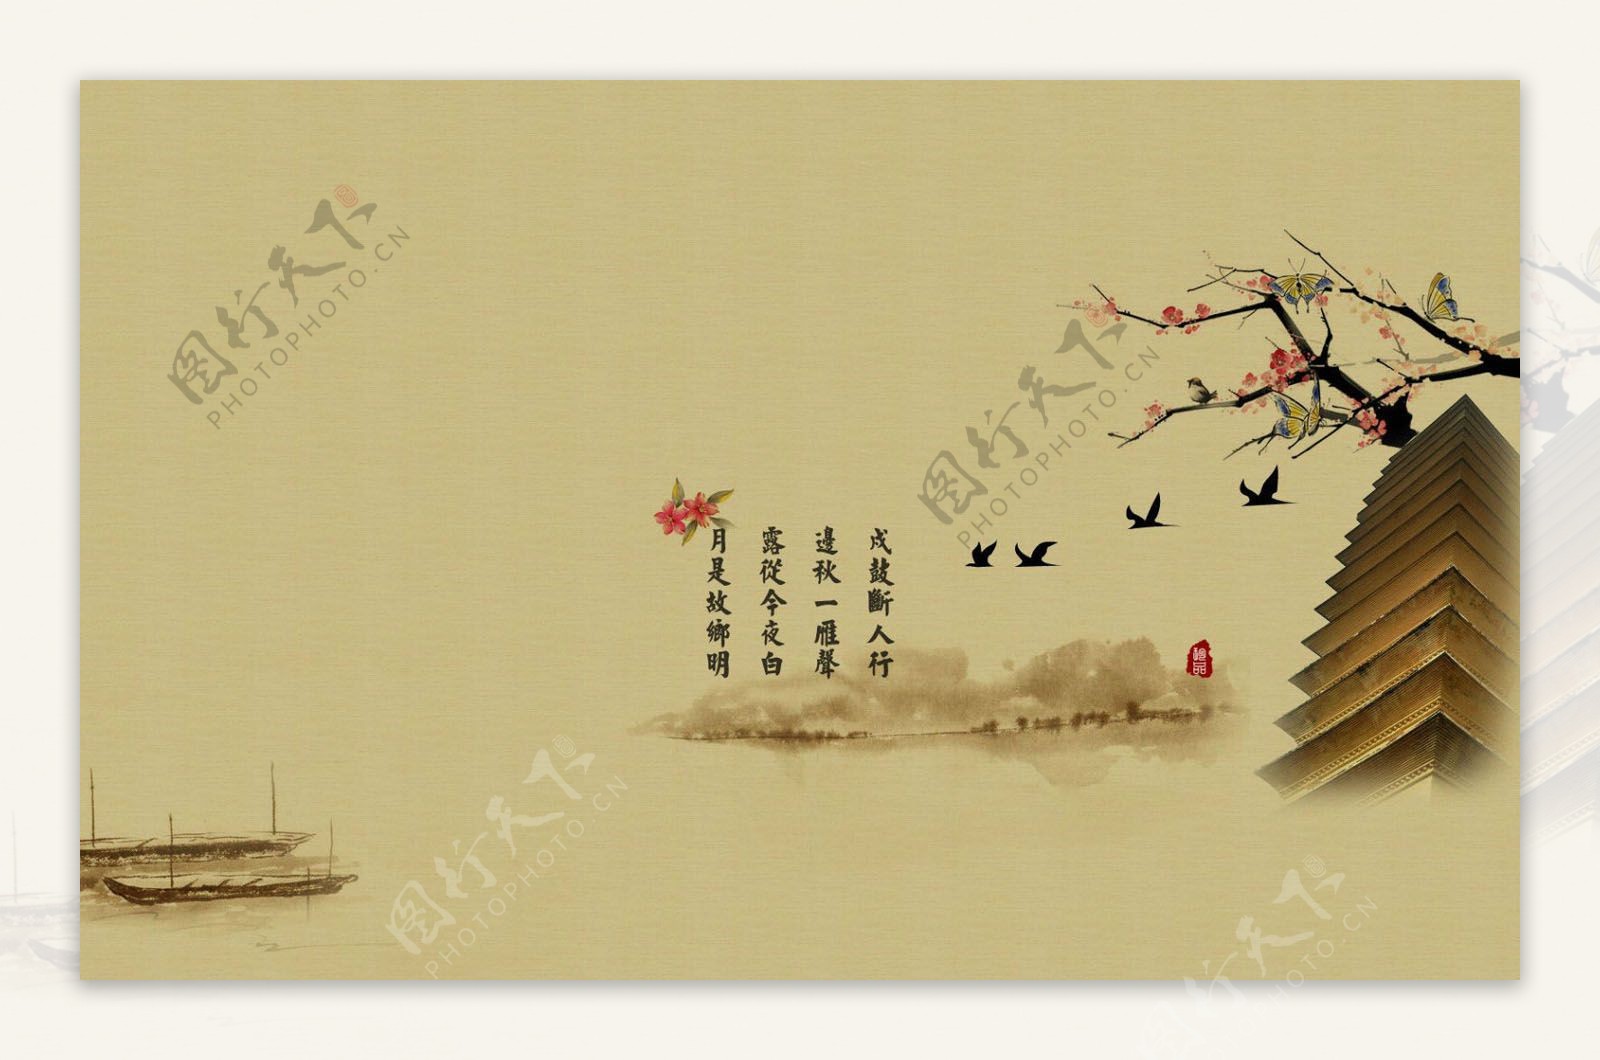 中国风水墨画山水楼台